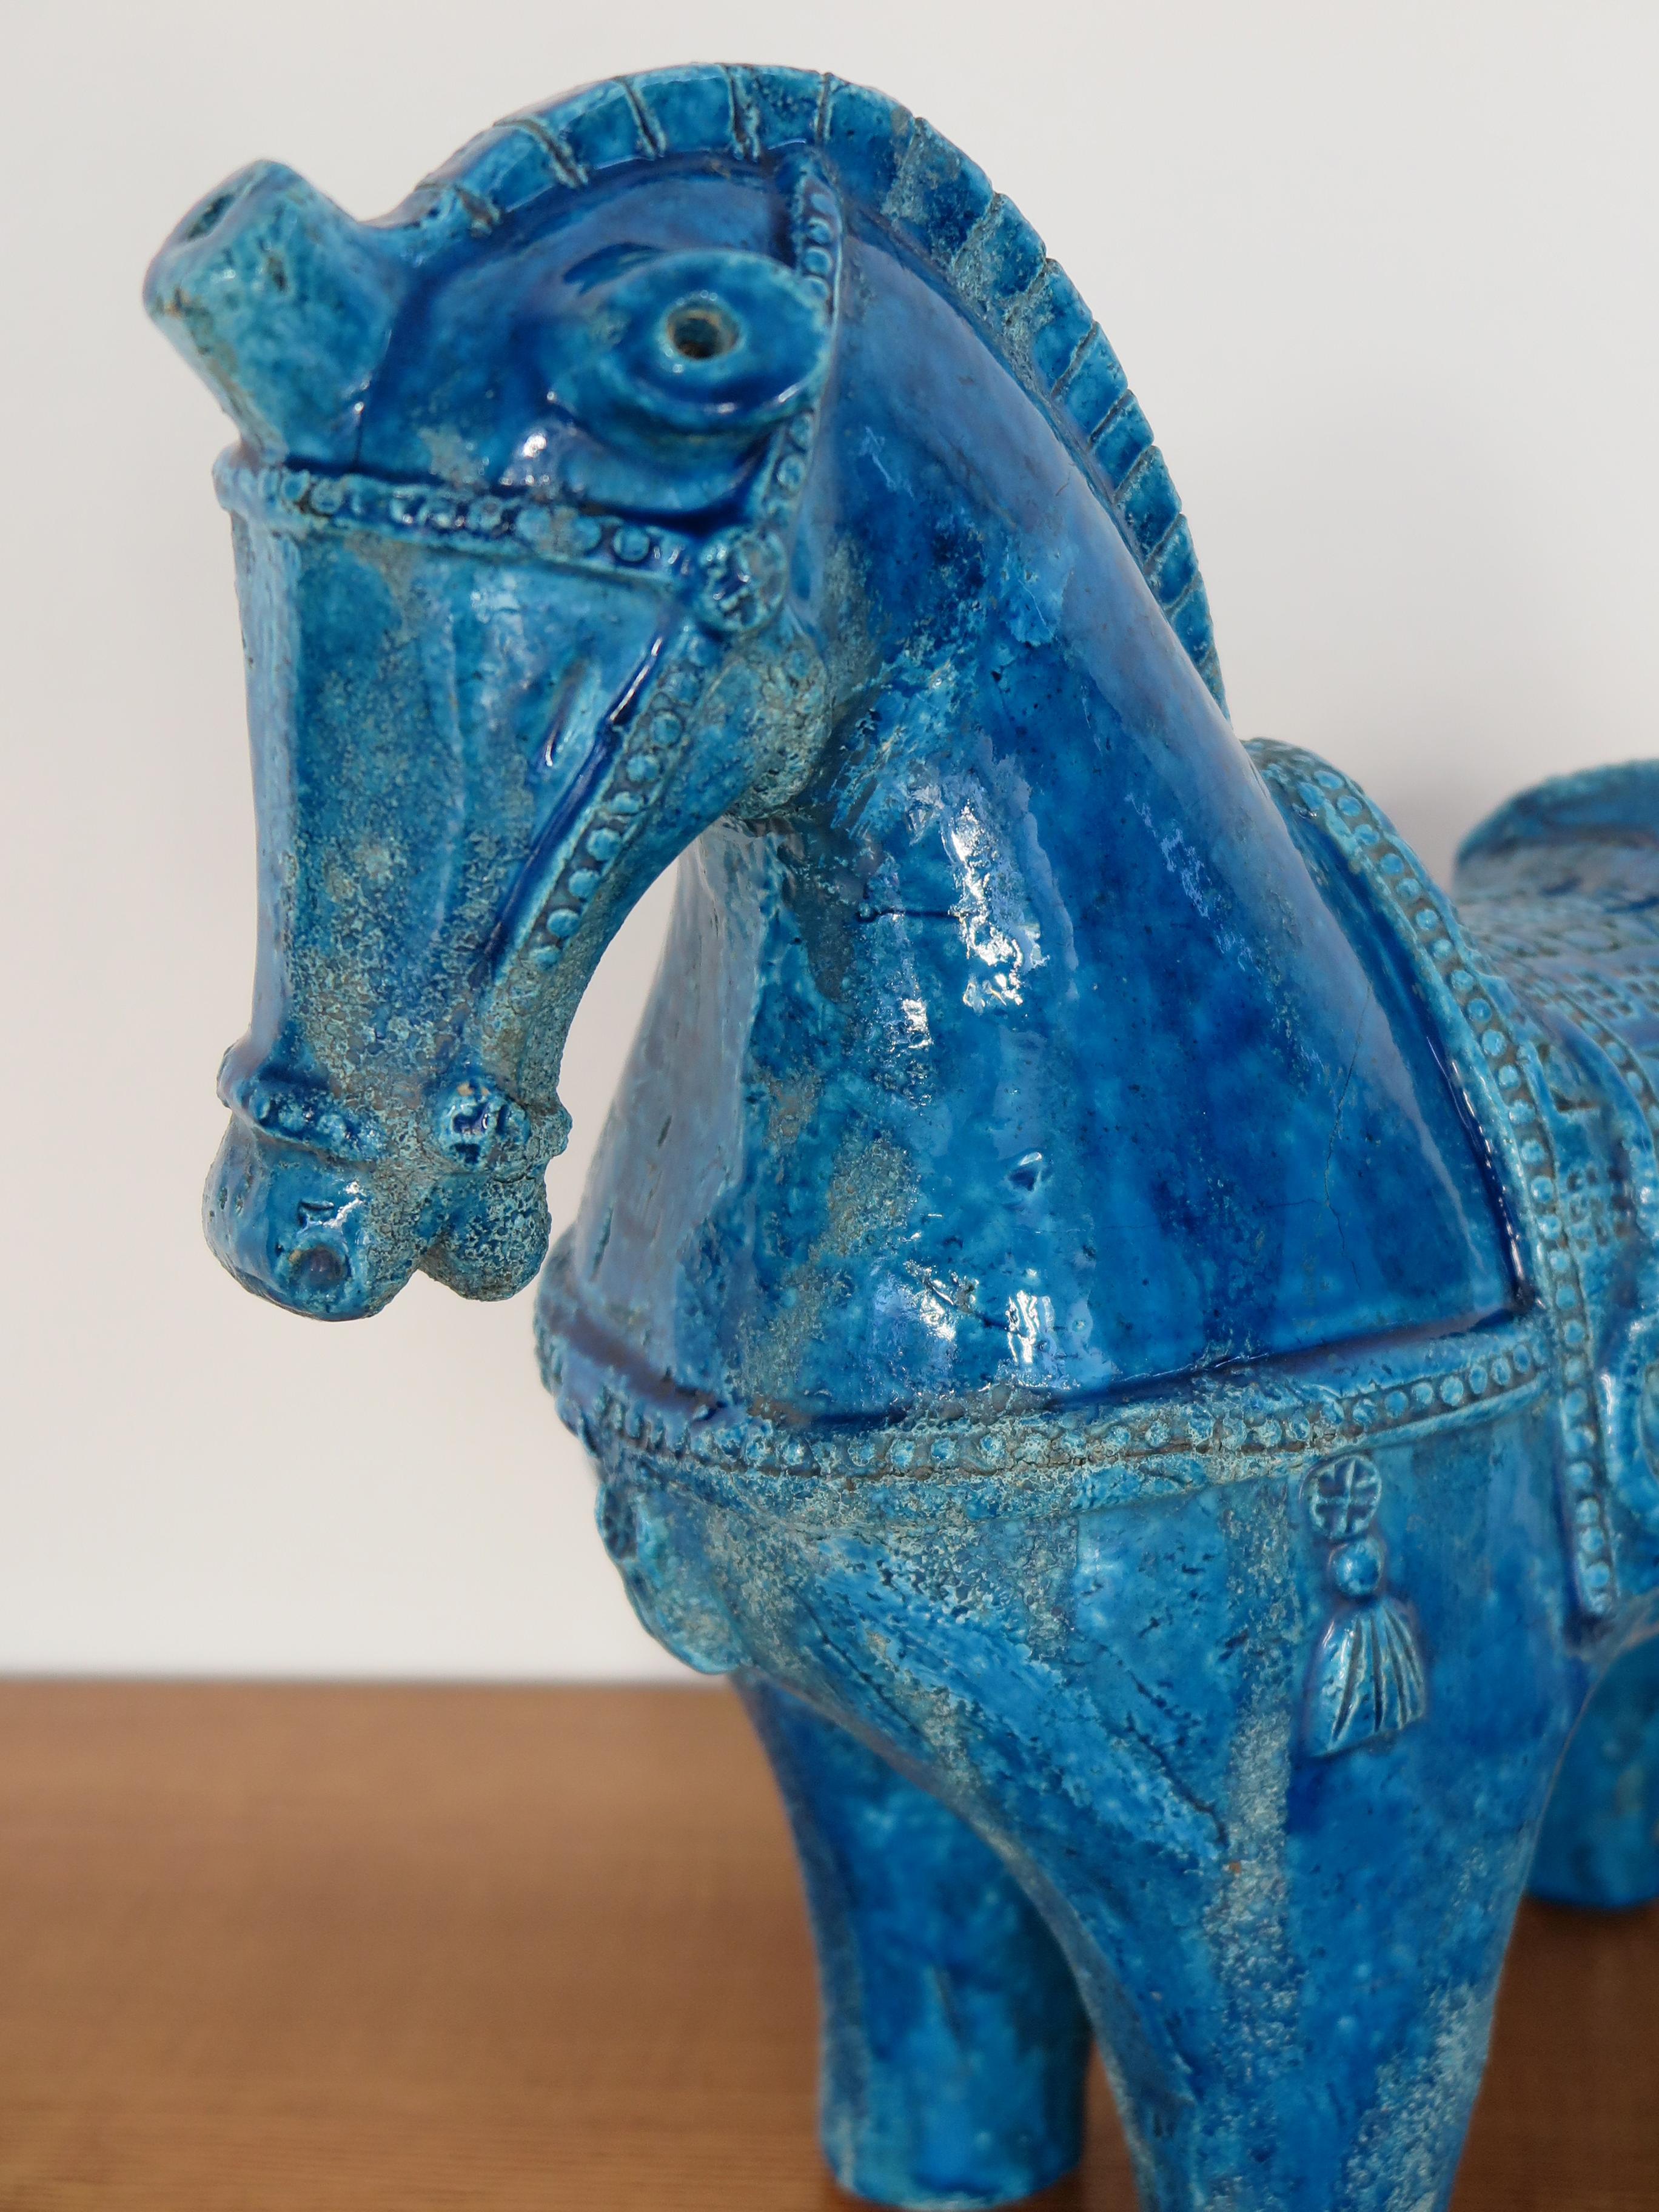 Aldo Londi for Bitossi Italian Midcentury Blue Sculpture Ceramic Horse 1960s In Good Condition For Sale In Reggio Emilia, IT